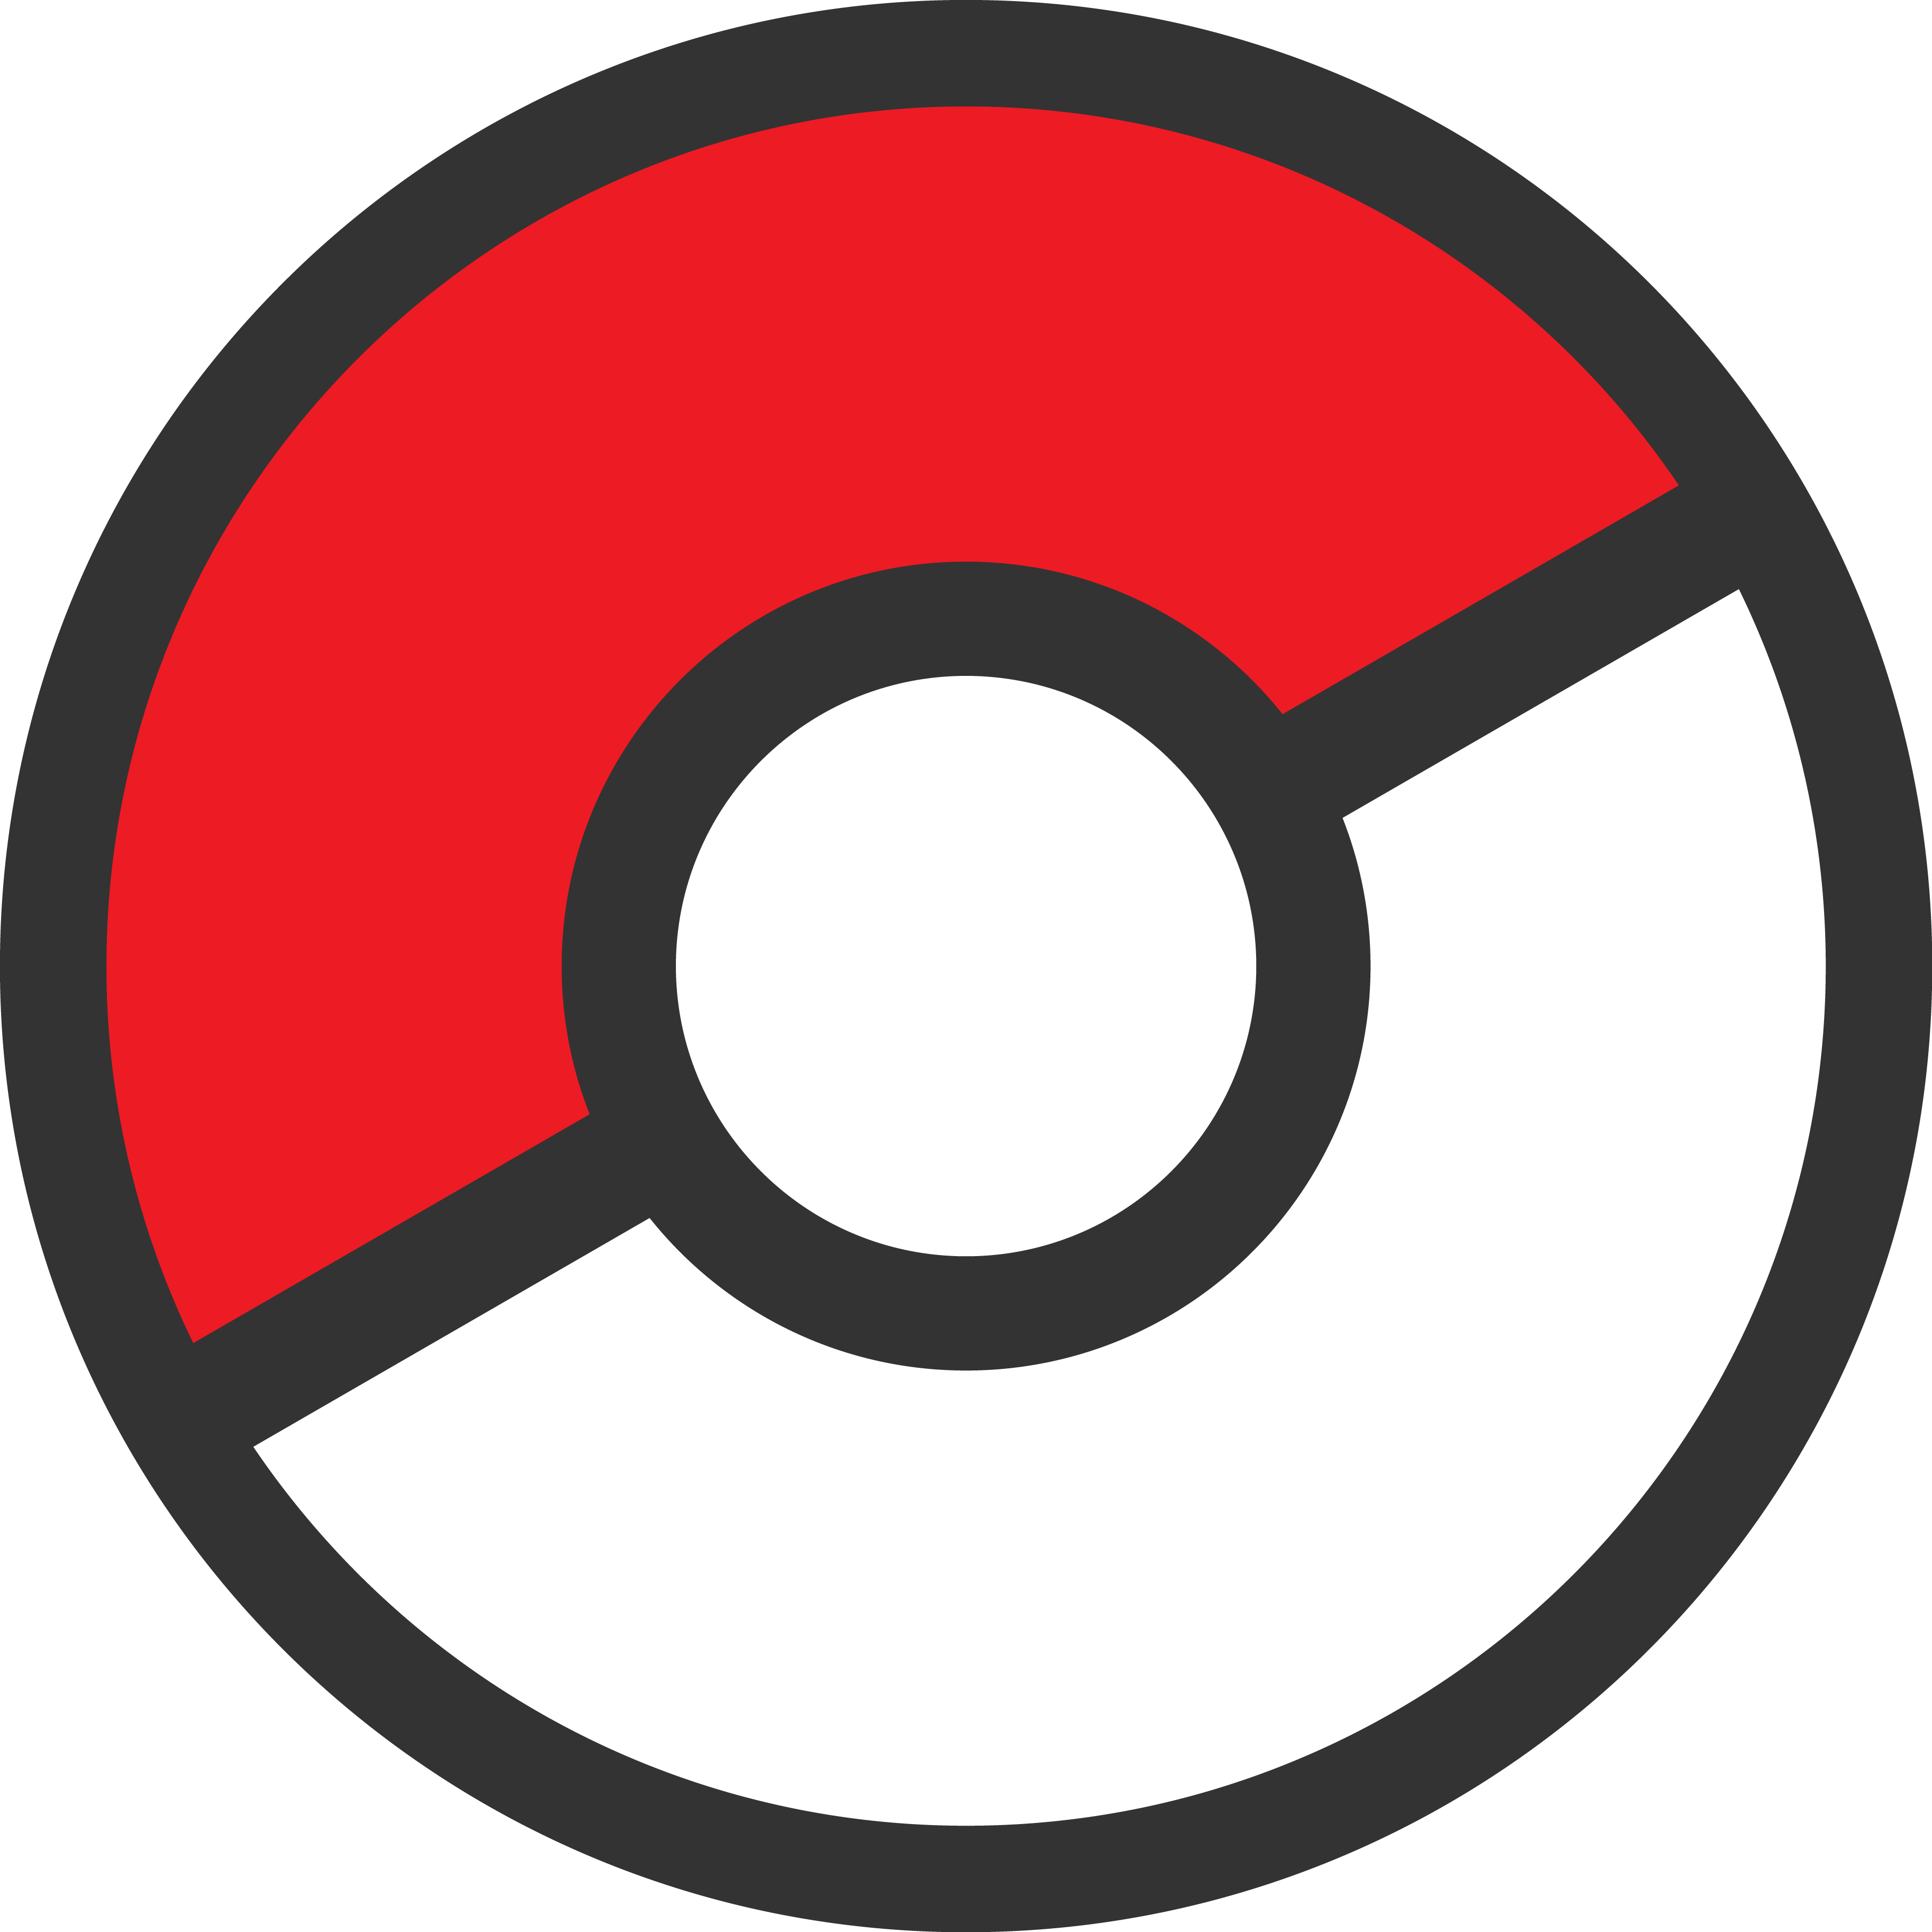 Game, go, play, pokeball, pokemon icon - Free download